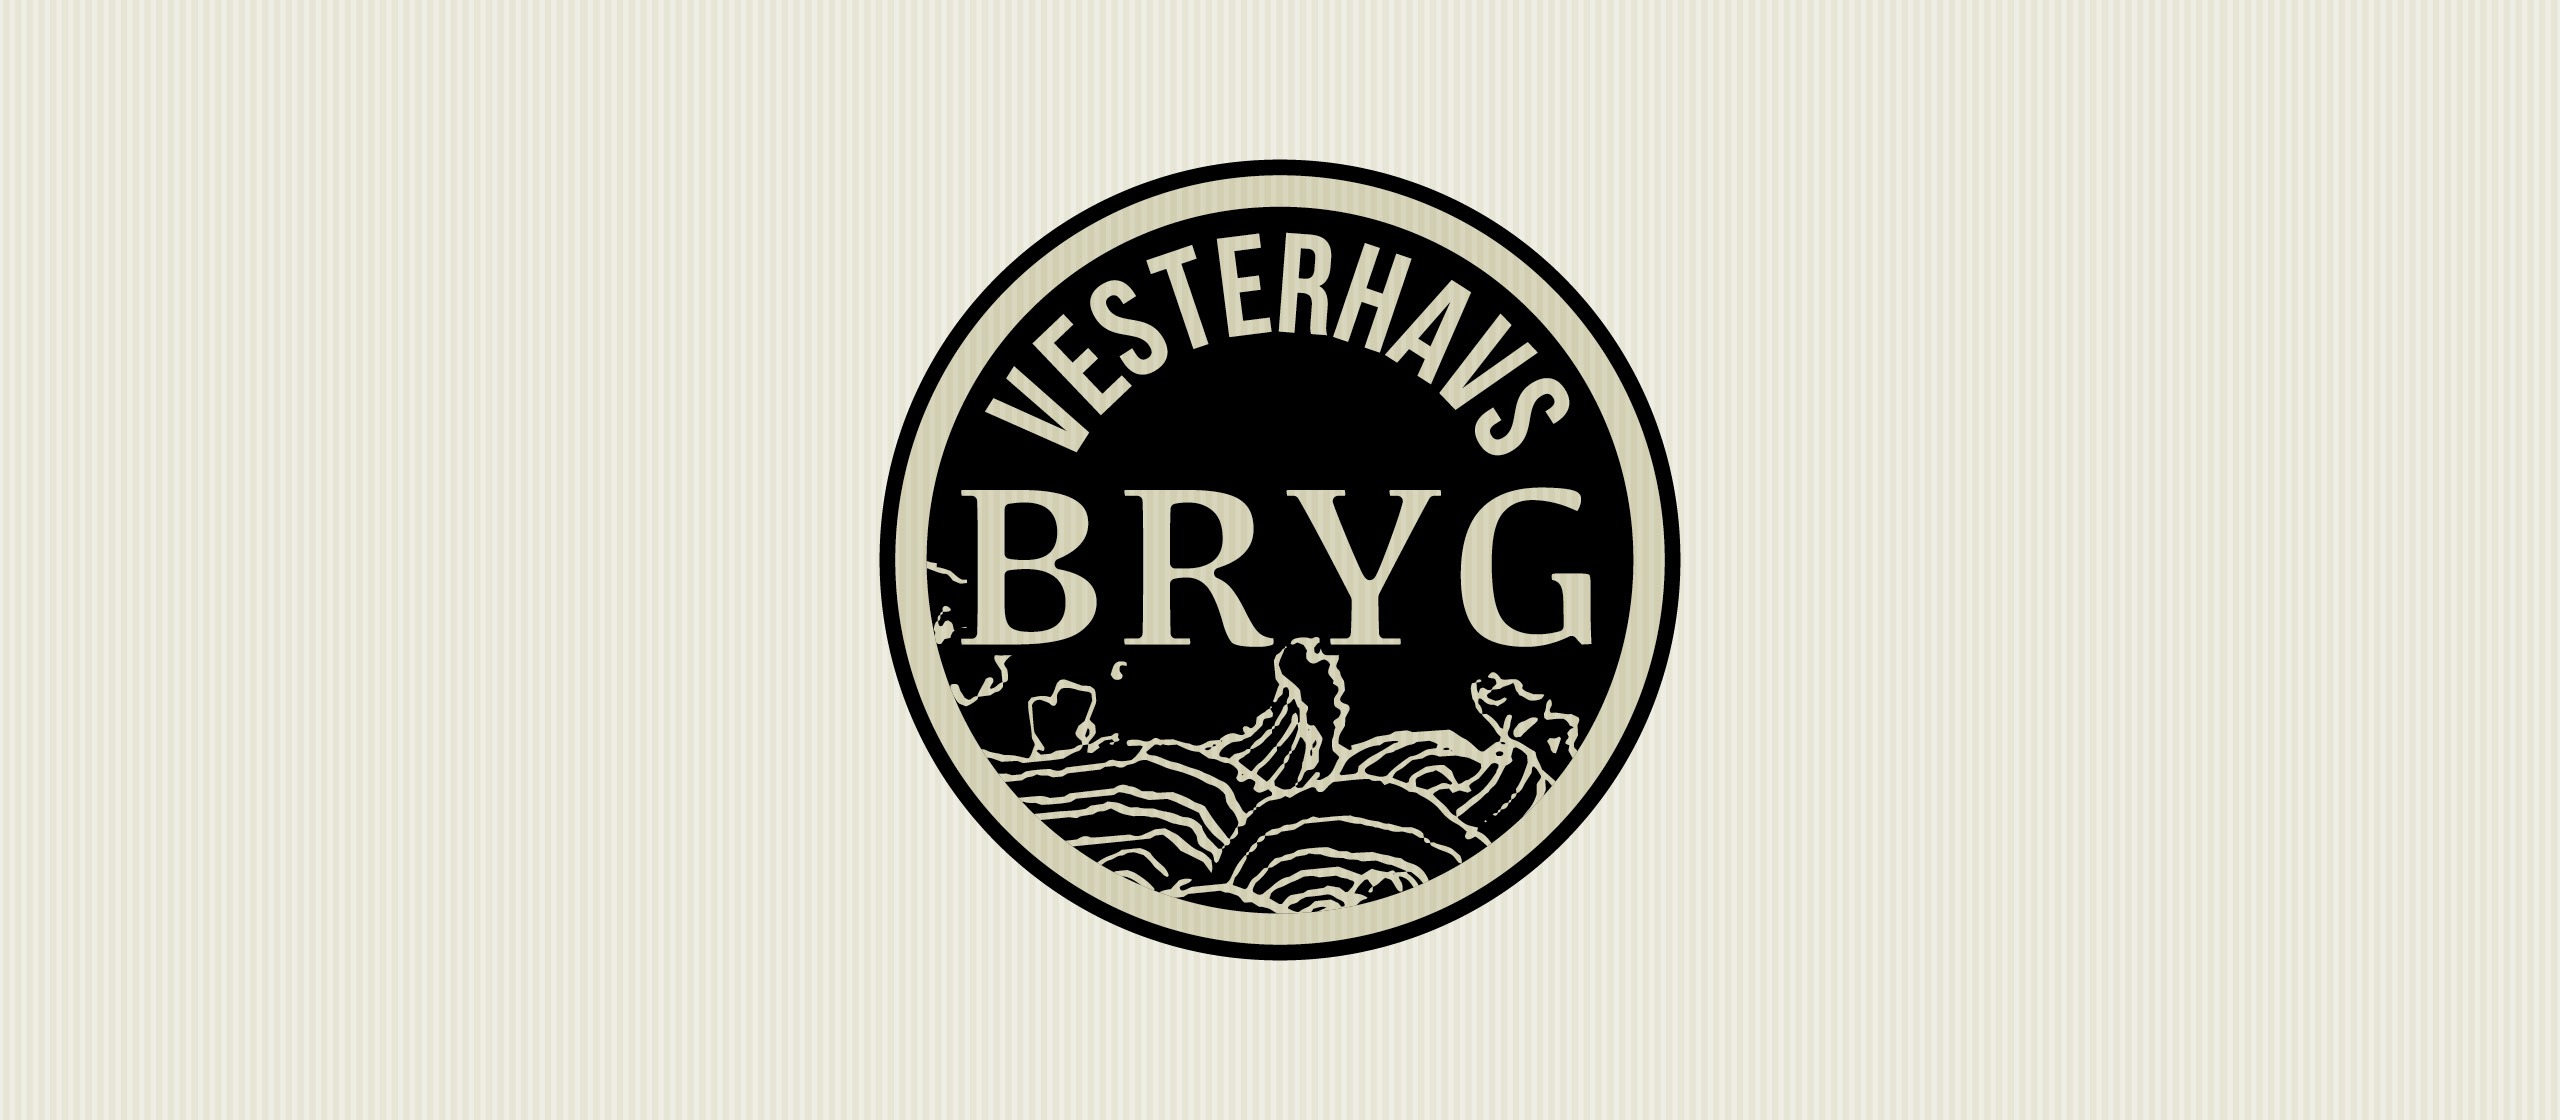 visuel identitet Vesterhavsbryg logo